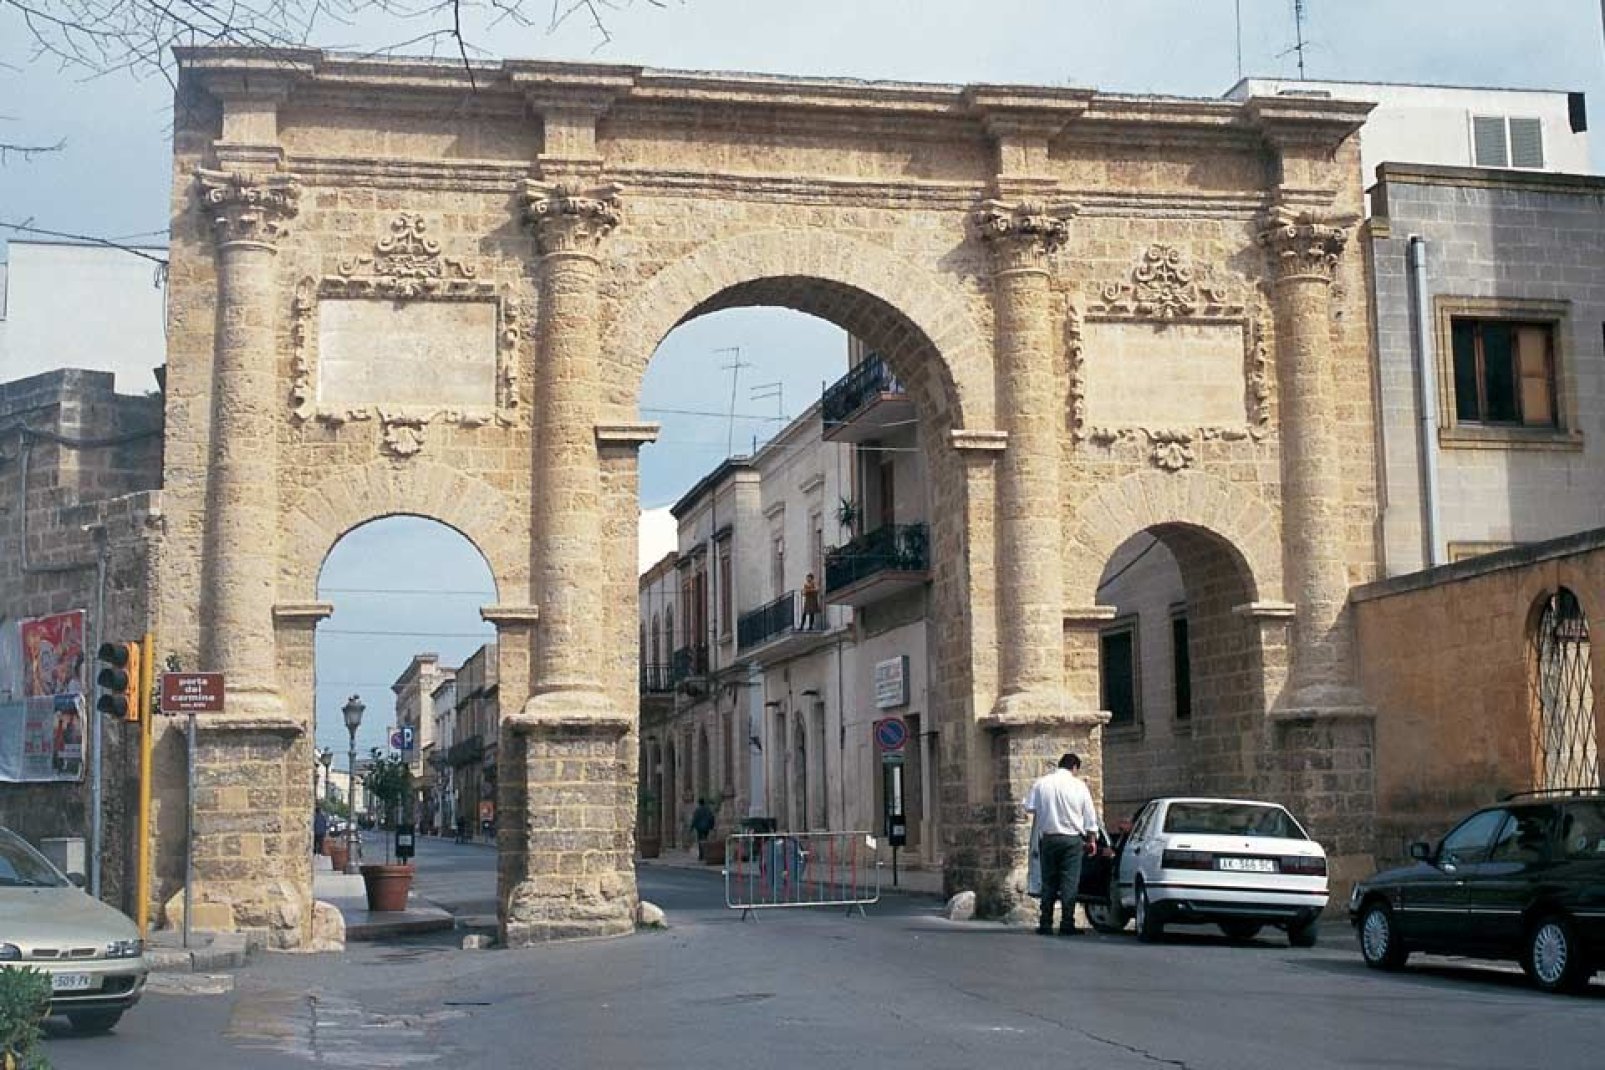 Brindisi ist eine sehr alte Stadt, die als wichtige Kreuzung zwischen Italien und dem Orient fungierte, wovon unter anderem die zahlreichen Kunstschätze zeugen.